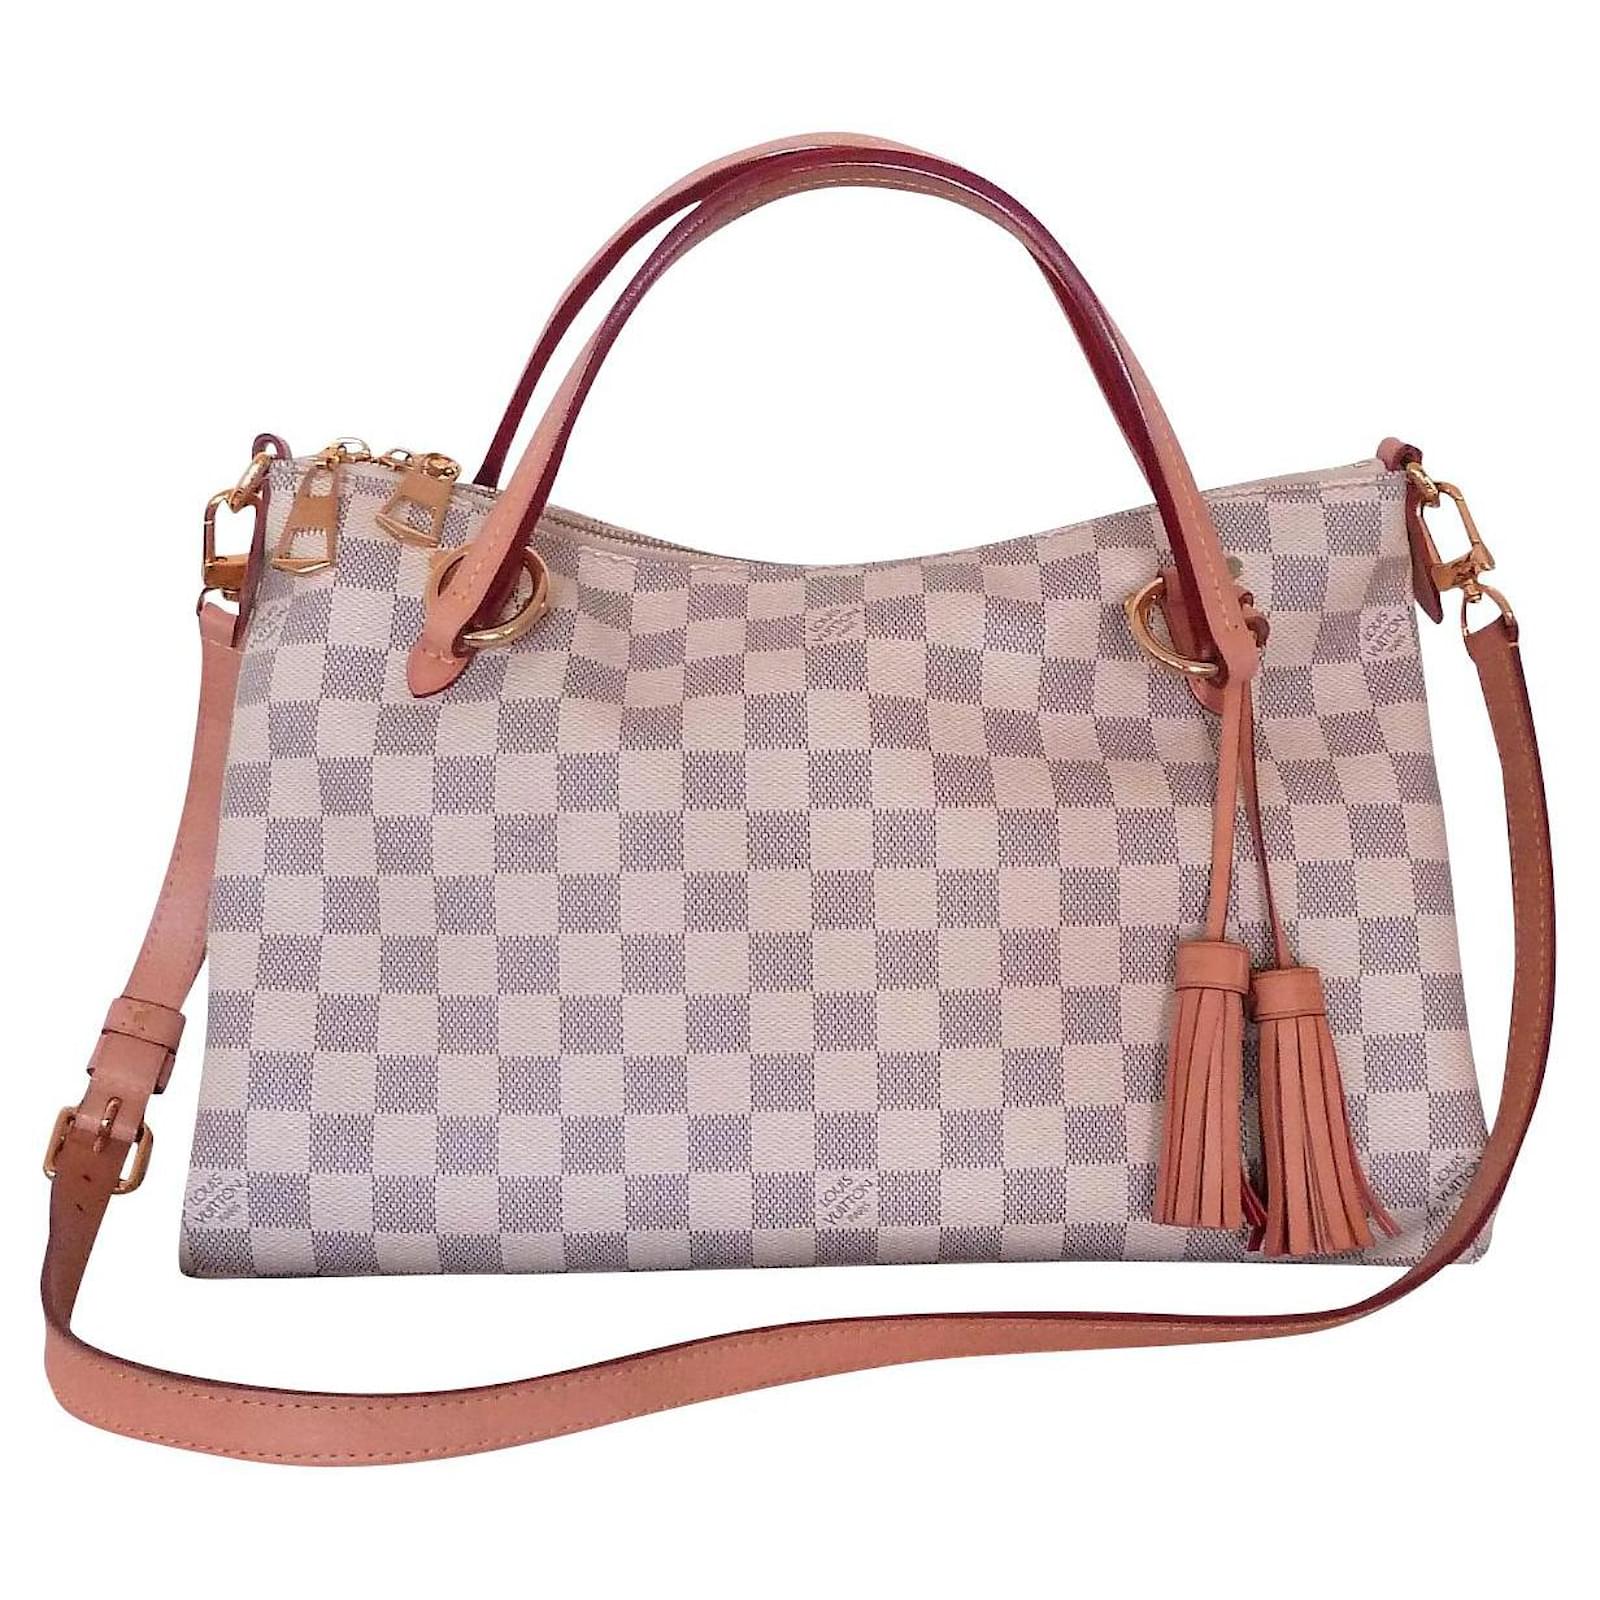 Authentic Louis Vuitton Damier Azur Lymington Tote/Crossbody Bag